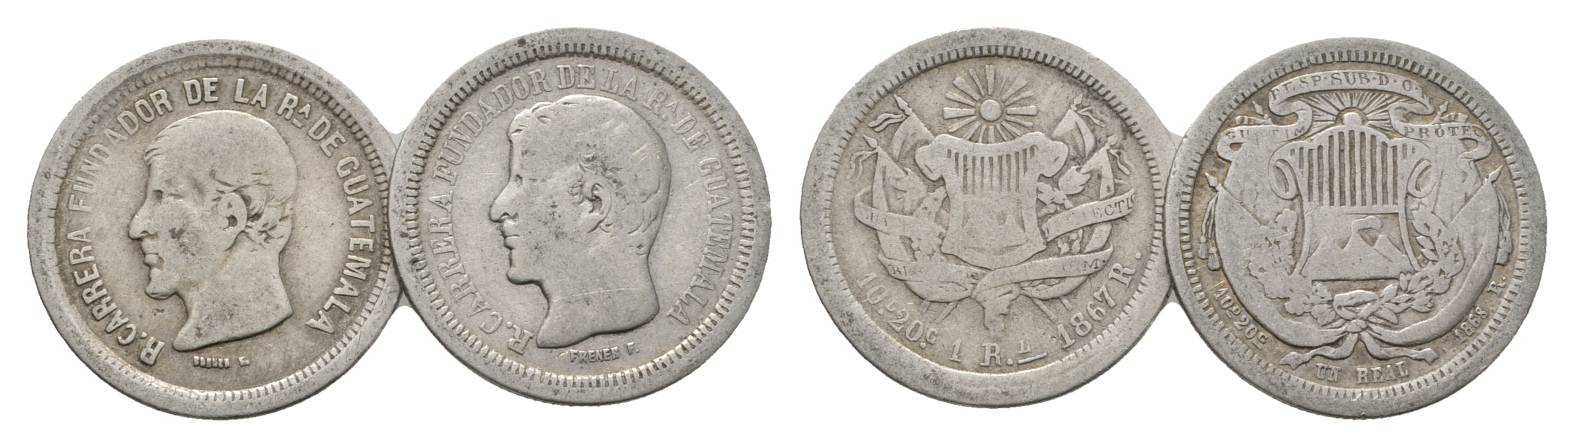  Guatemala, 1 Real 1867/68   